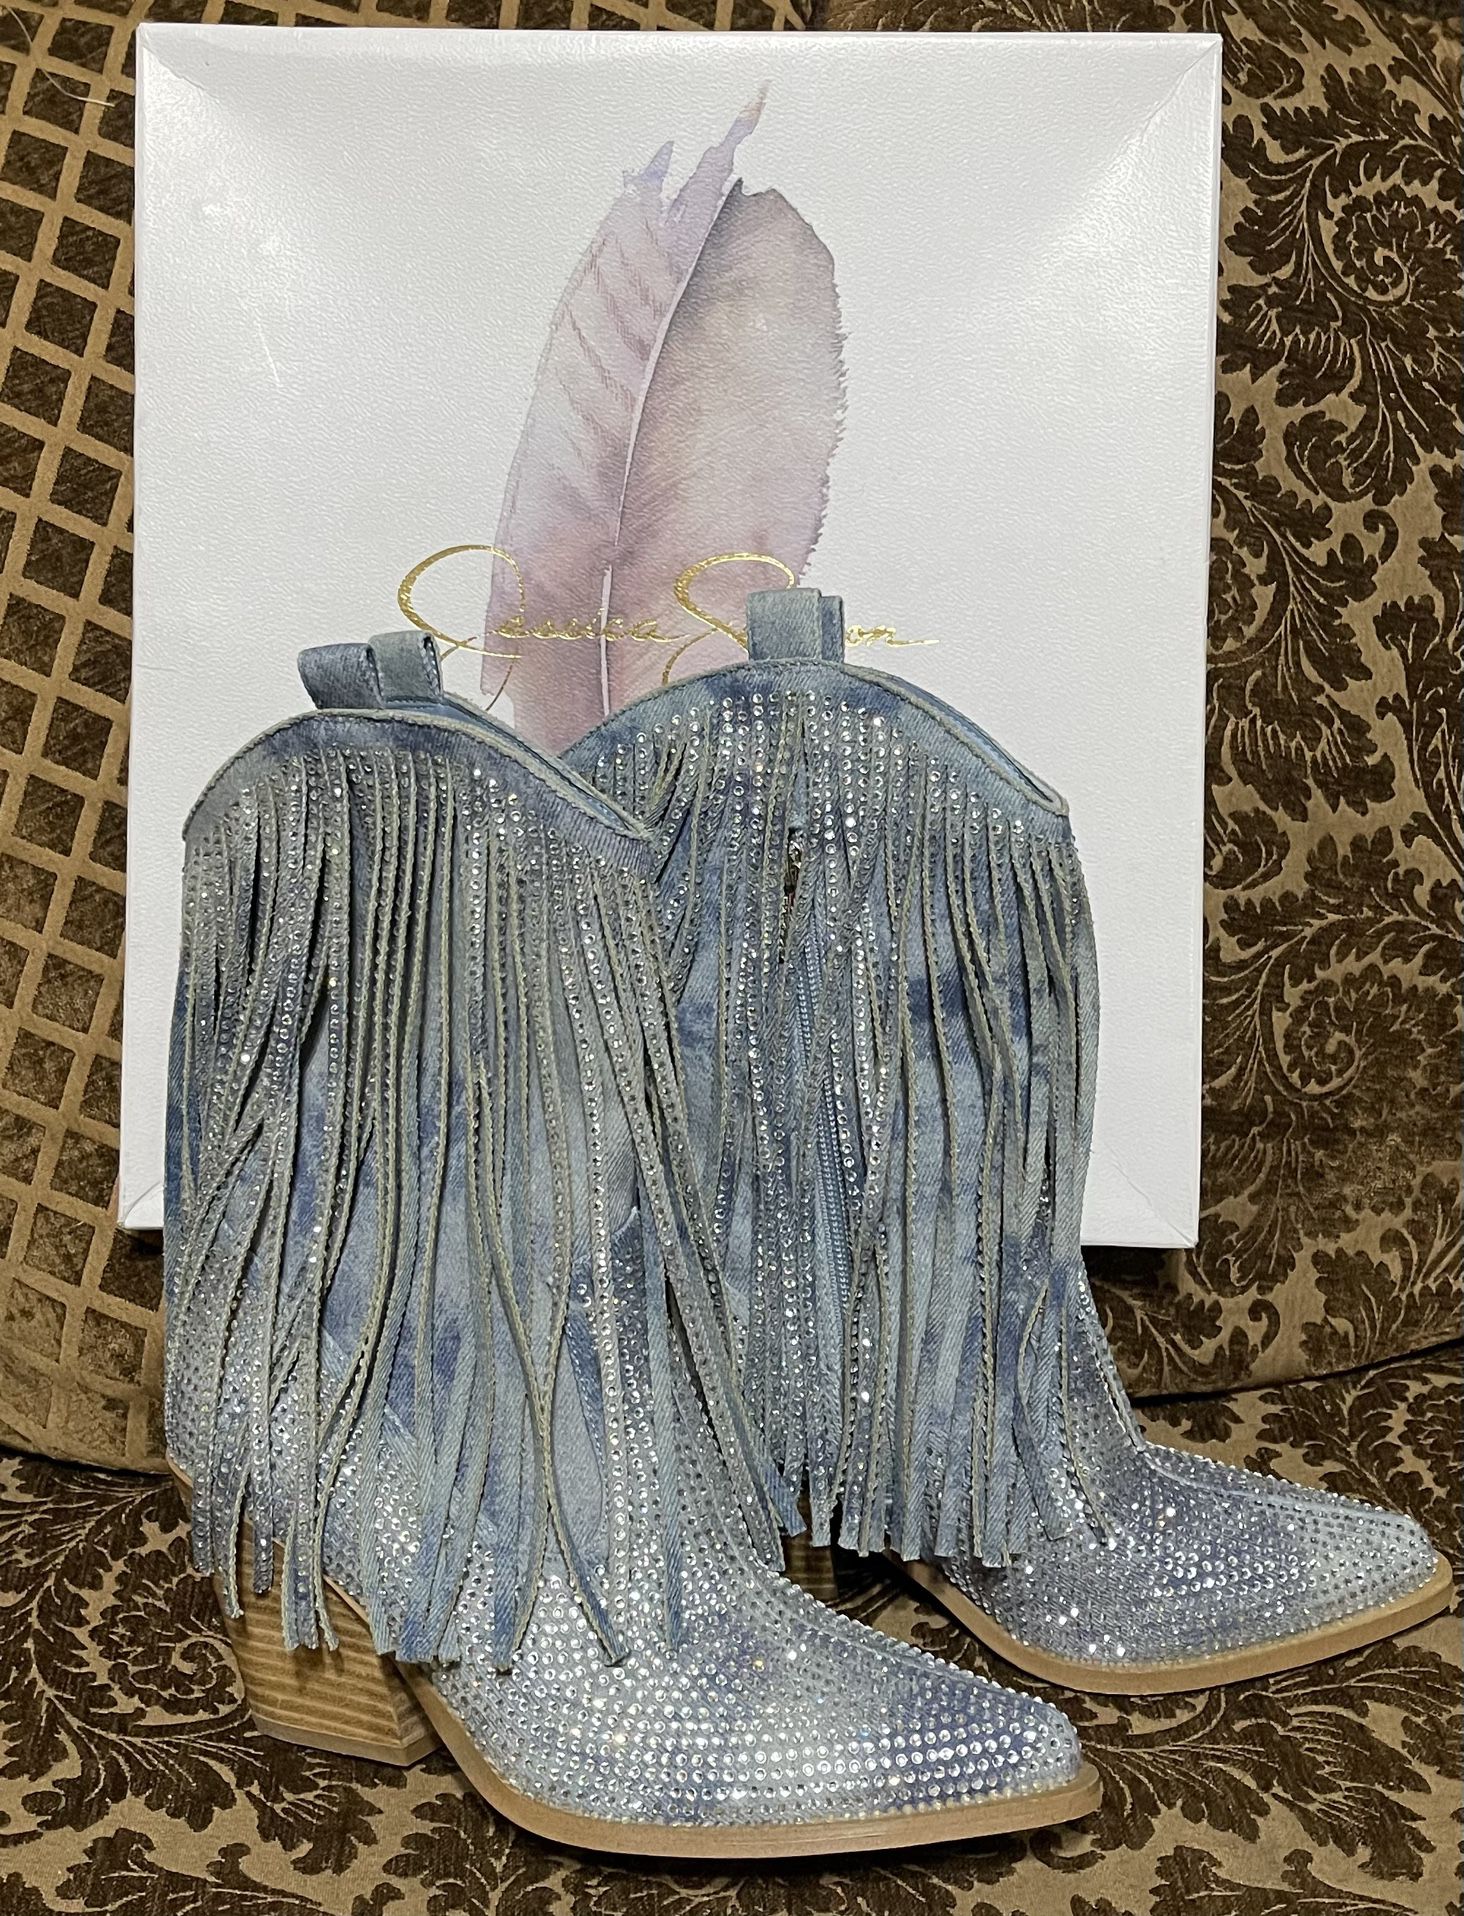 Women Cowboy Boots